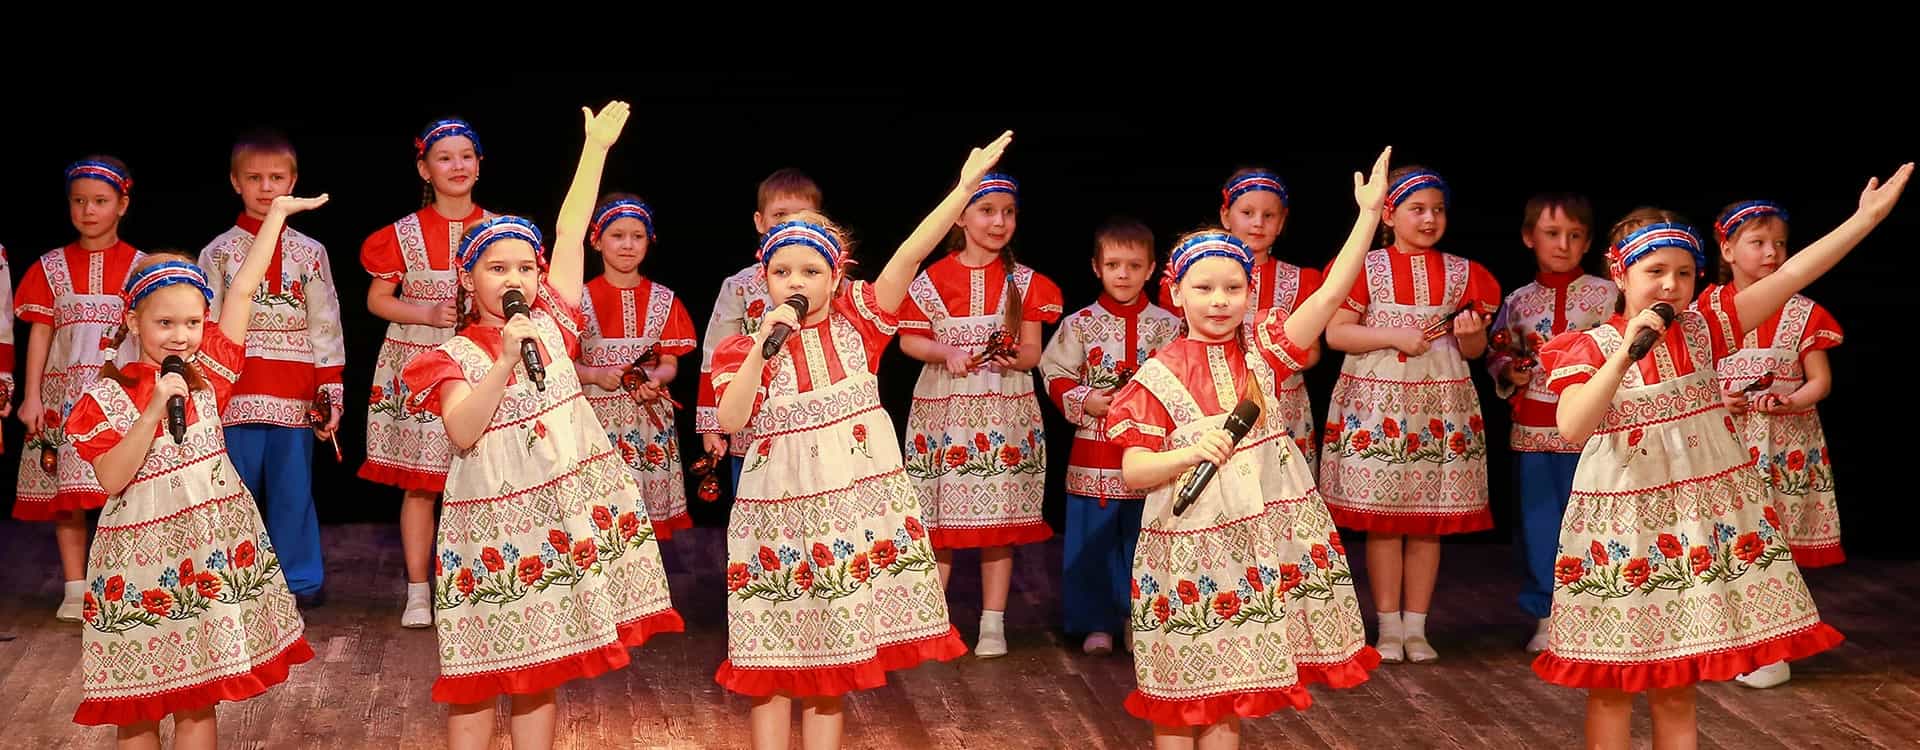 АРТ-Фестиваль «Роза Ветров» в Нижнем Новгороде